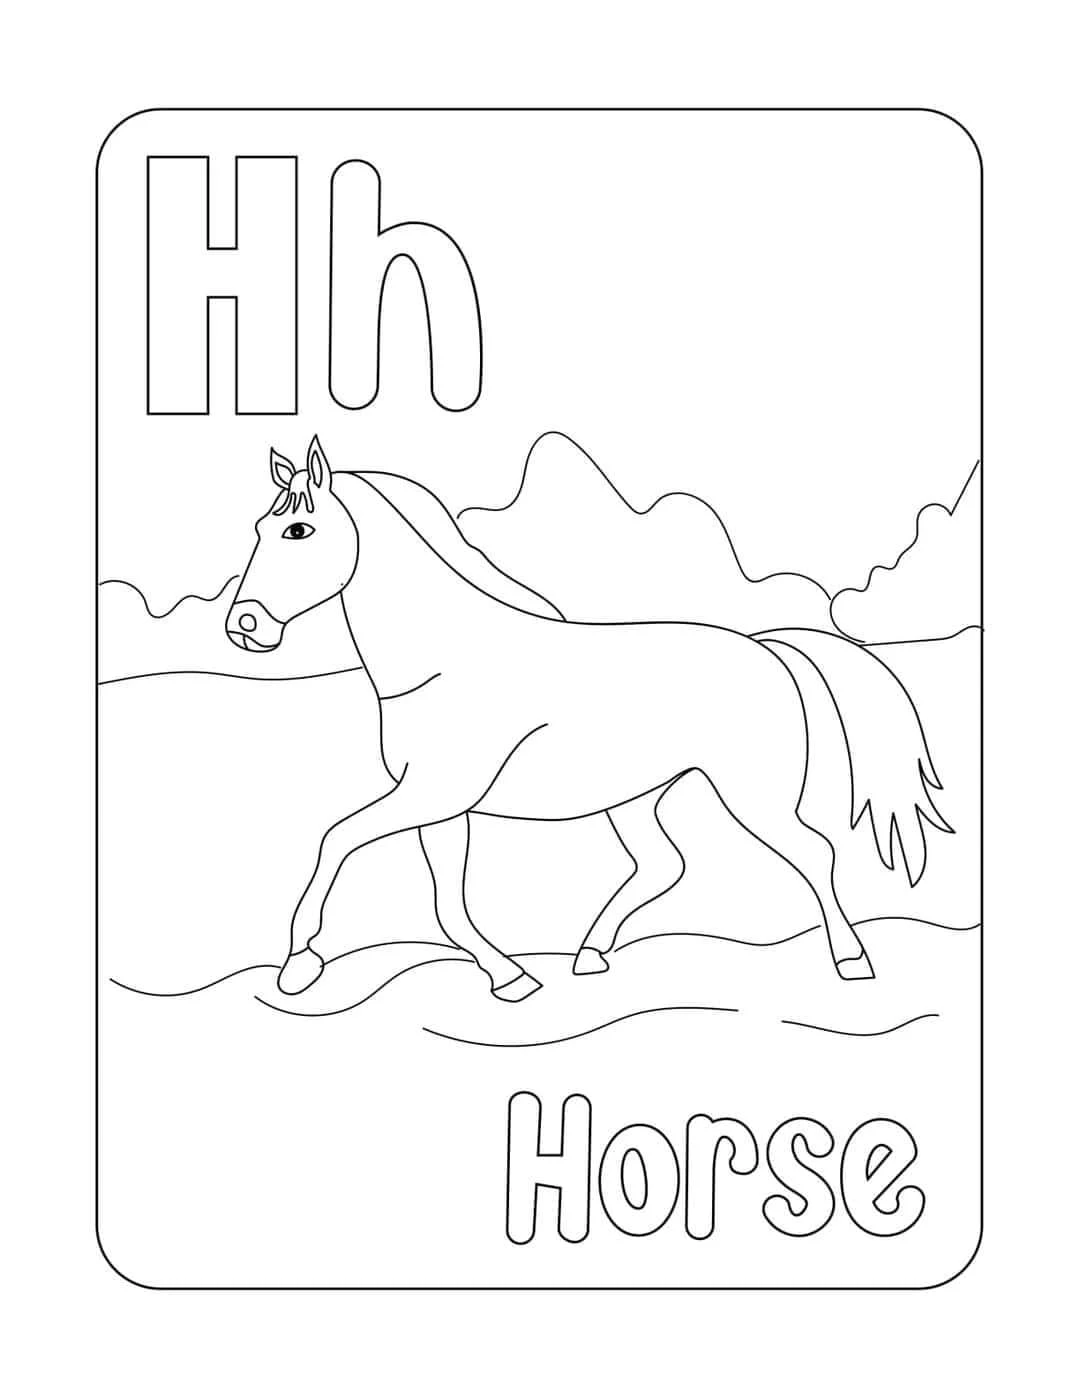 Tranh tô màu con ngựa (Horse)